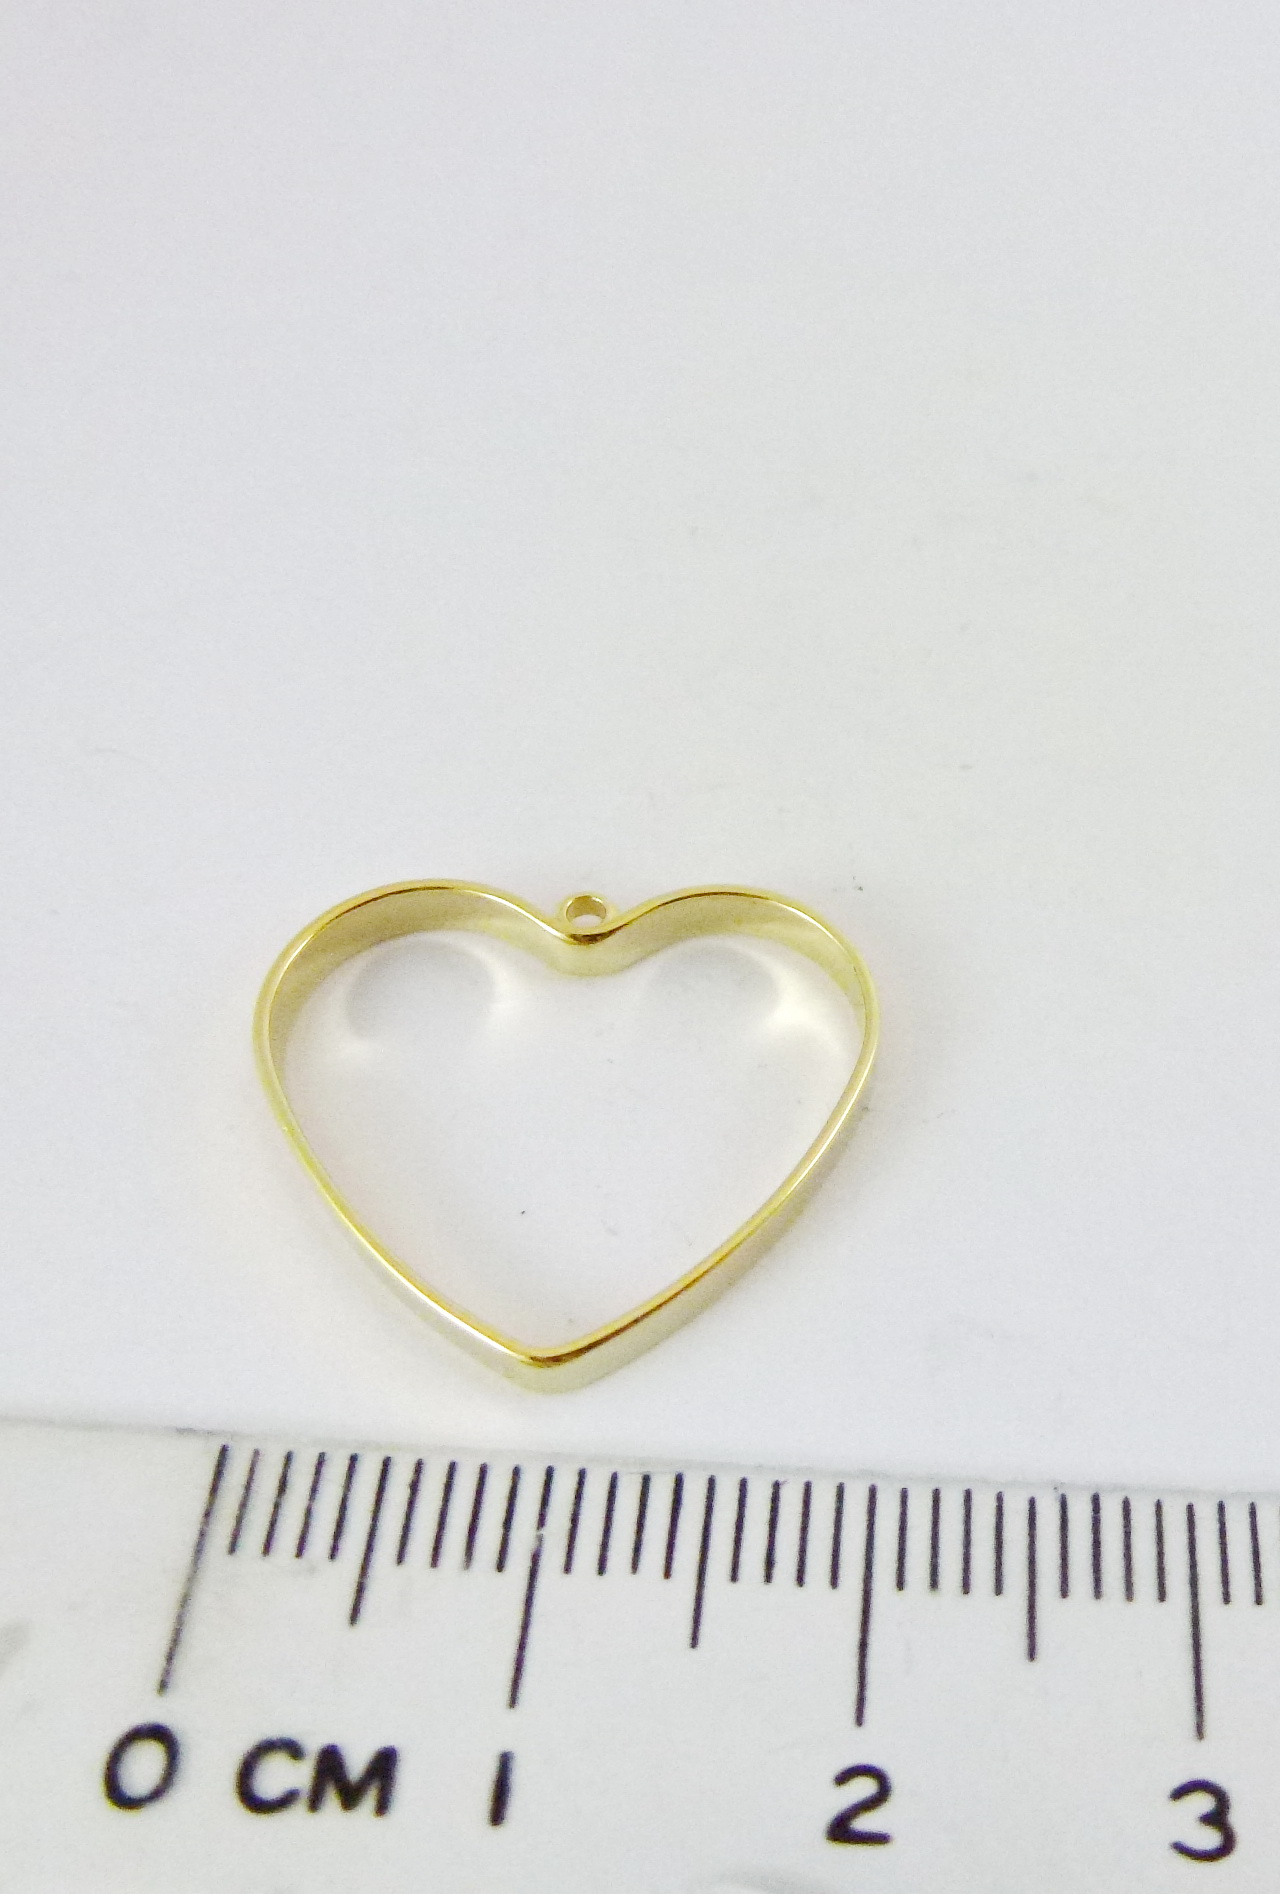 22mm銅鍍金色單孔心形框